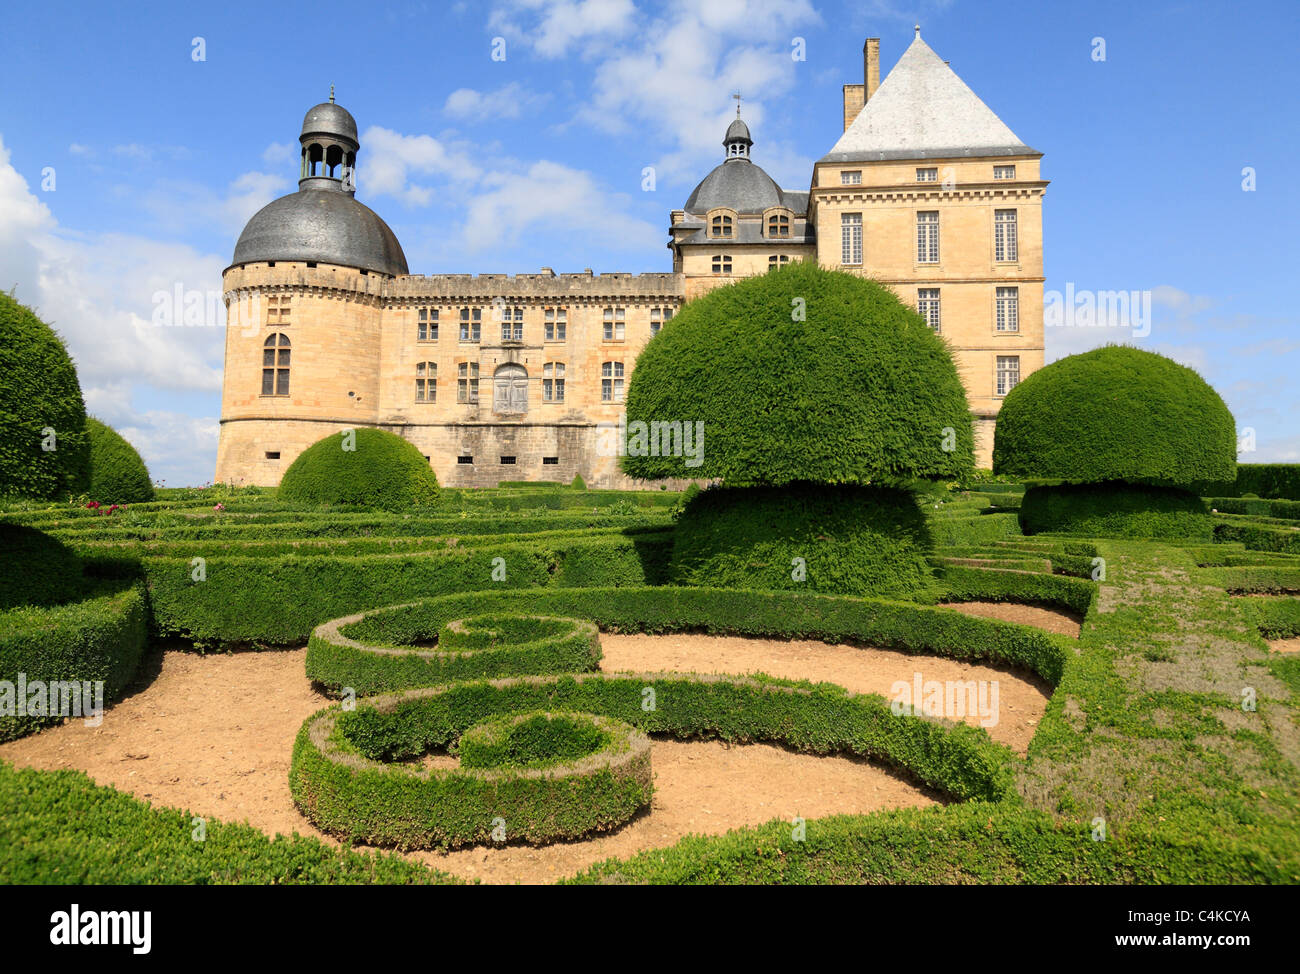 Les jardins français officiel avec couvertures et géométrique fort Renaiissance topiaire Château de Hautefort Dordogne Aquitaine France Banque D'Images